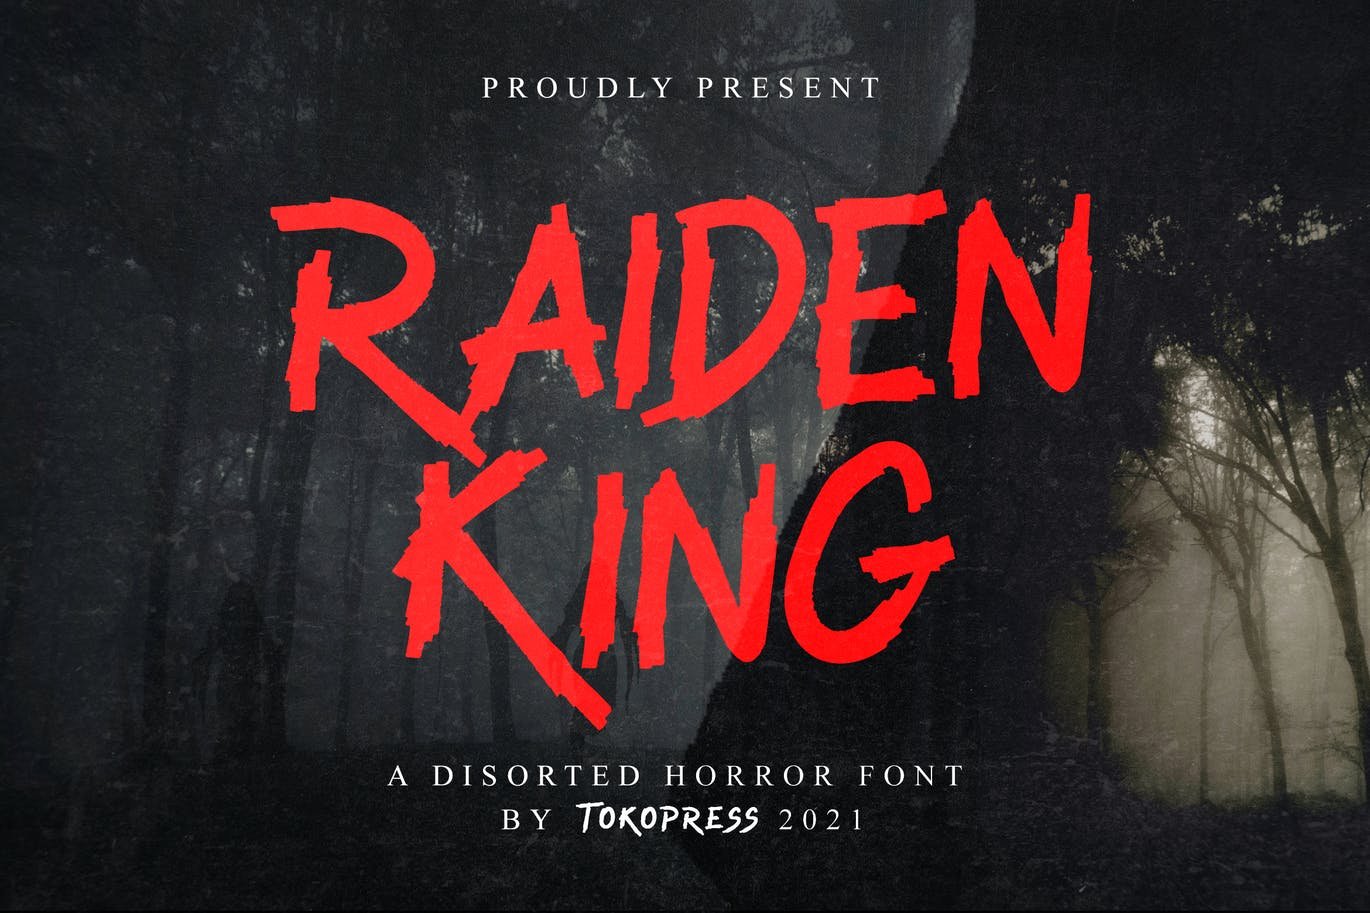 RAIDEN KING - Brush font cover image.